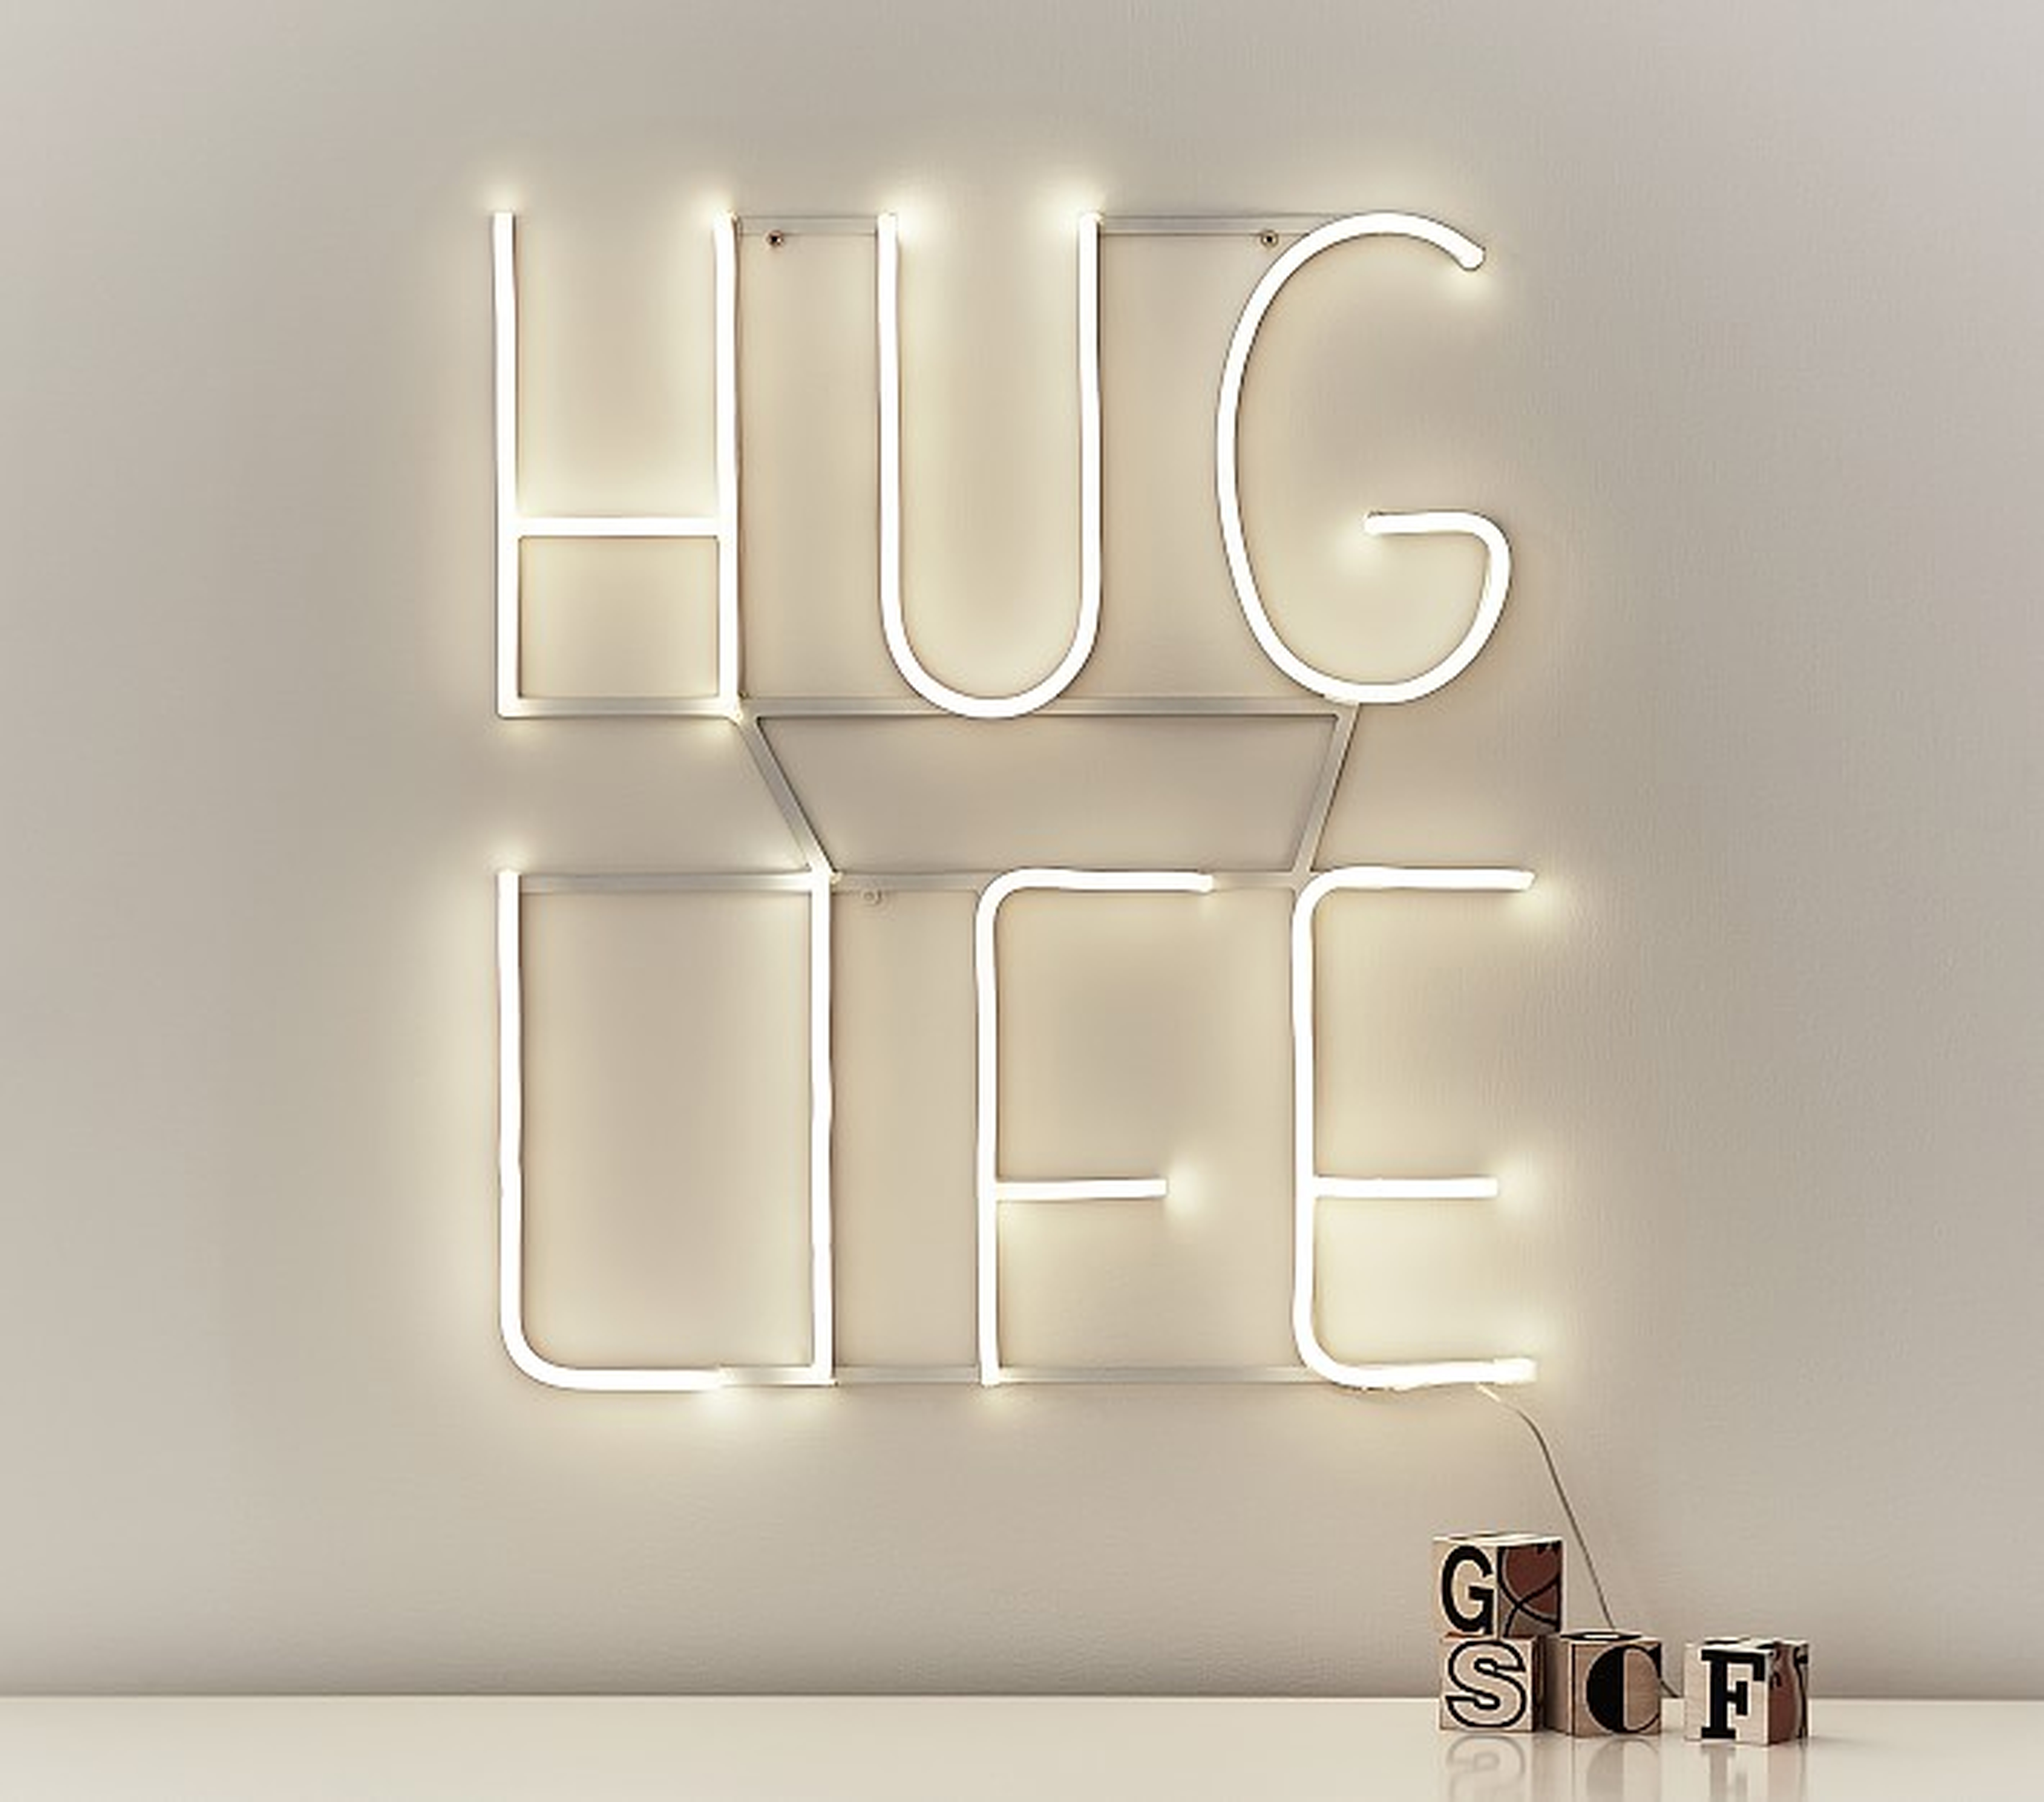 LED Sentiment Wall Light: Hug Life - Pottery Barn Kids